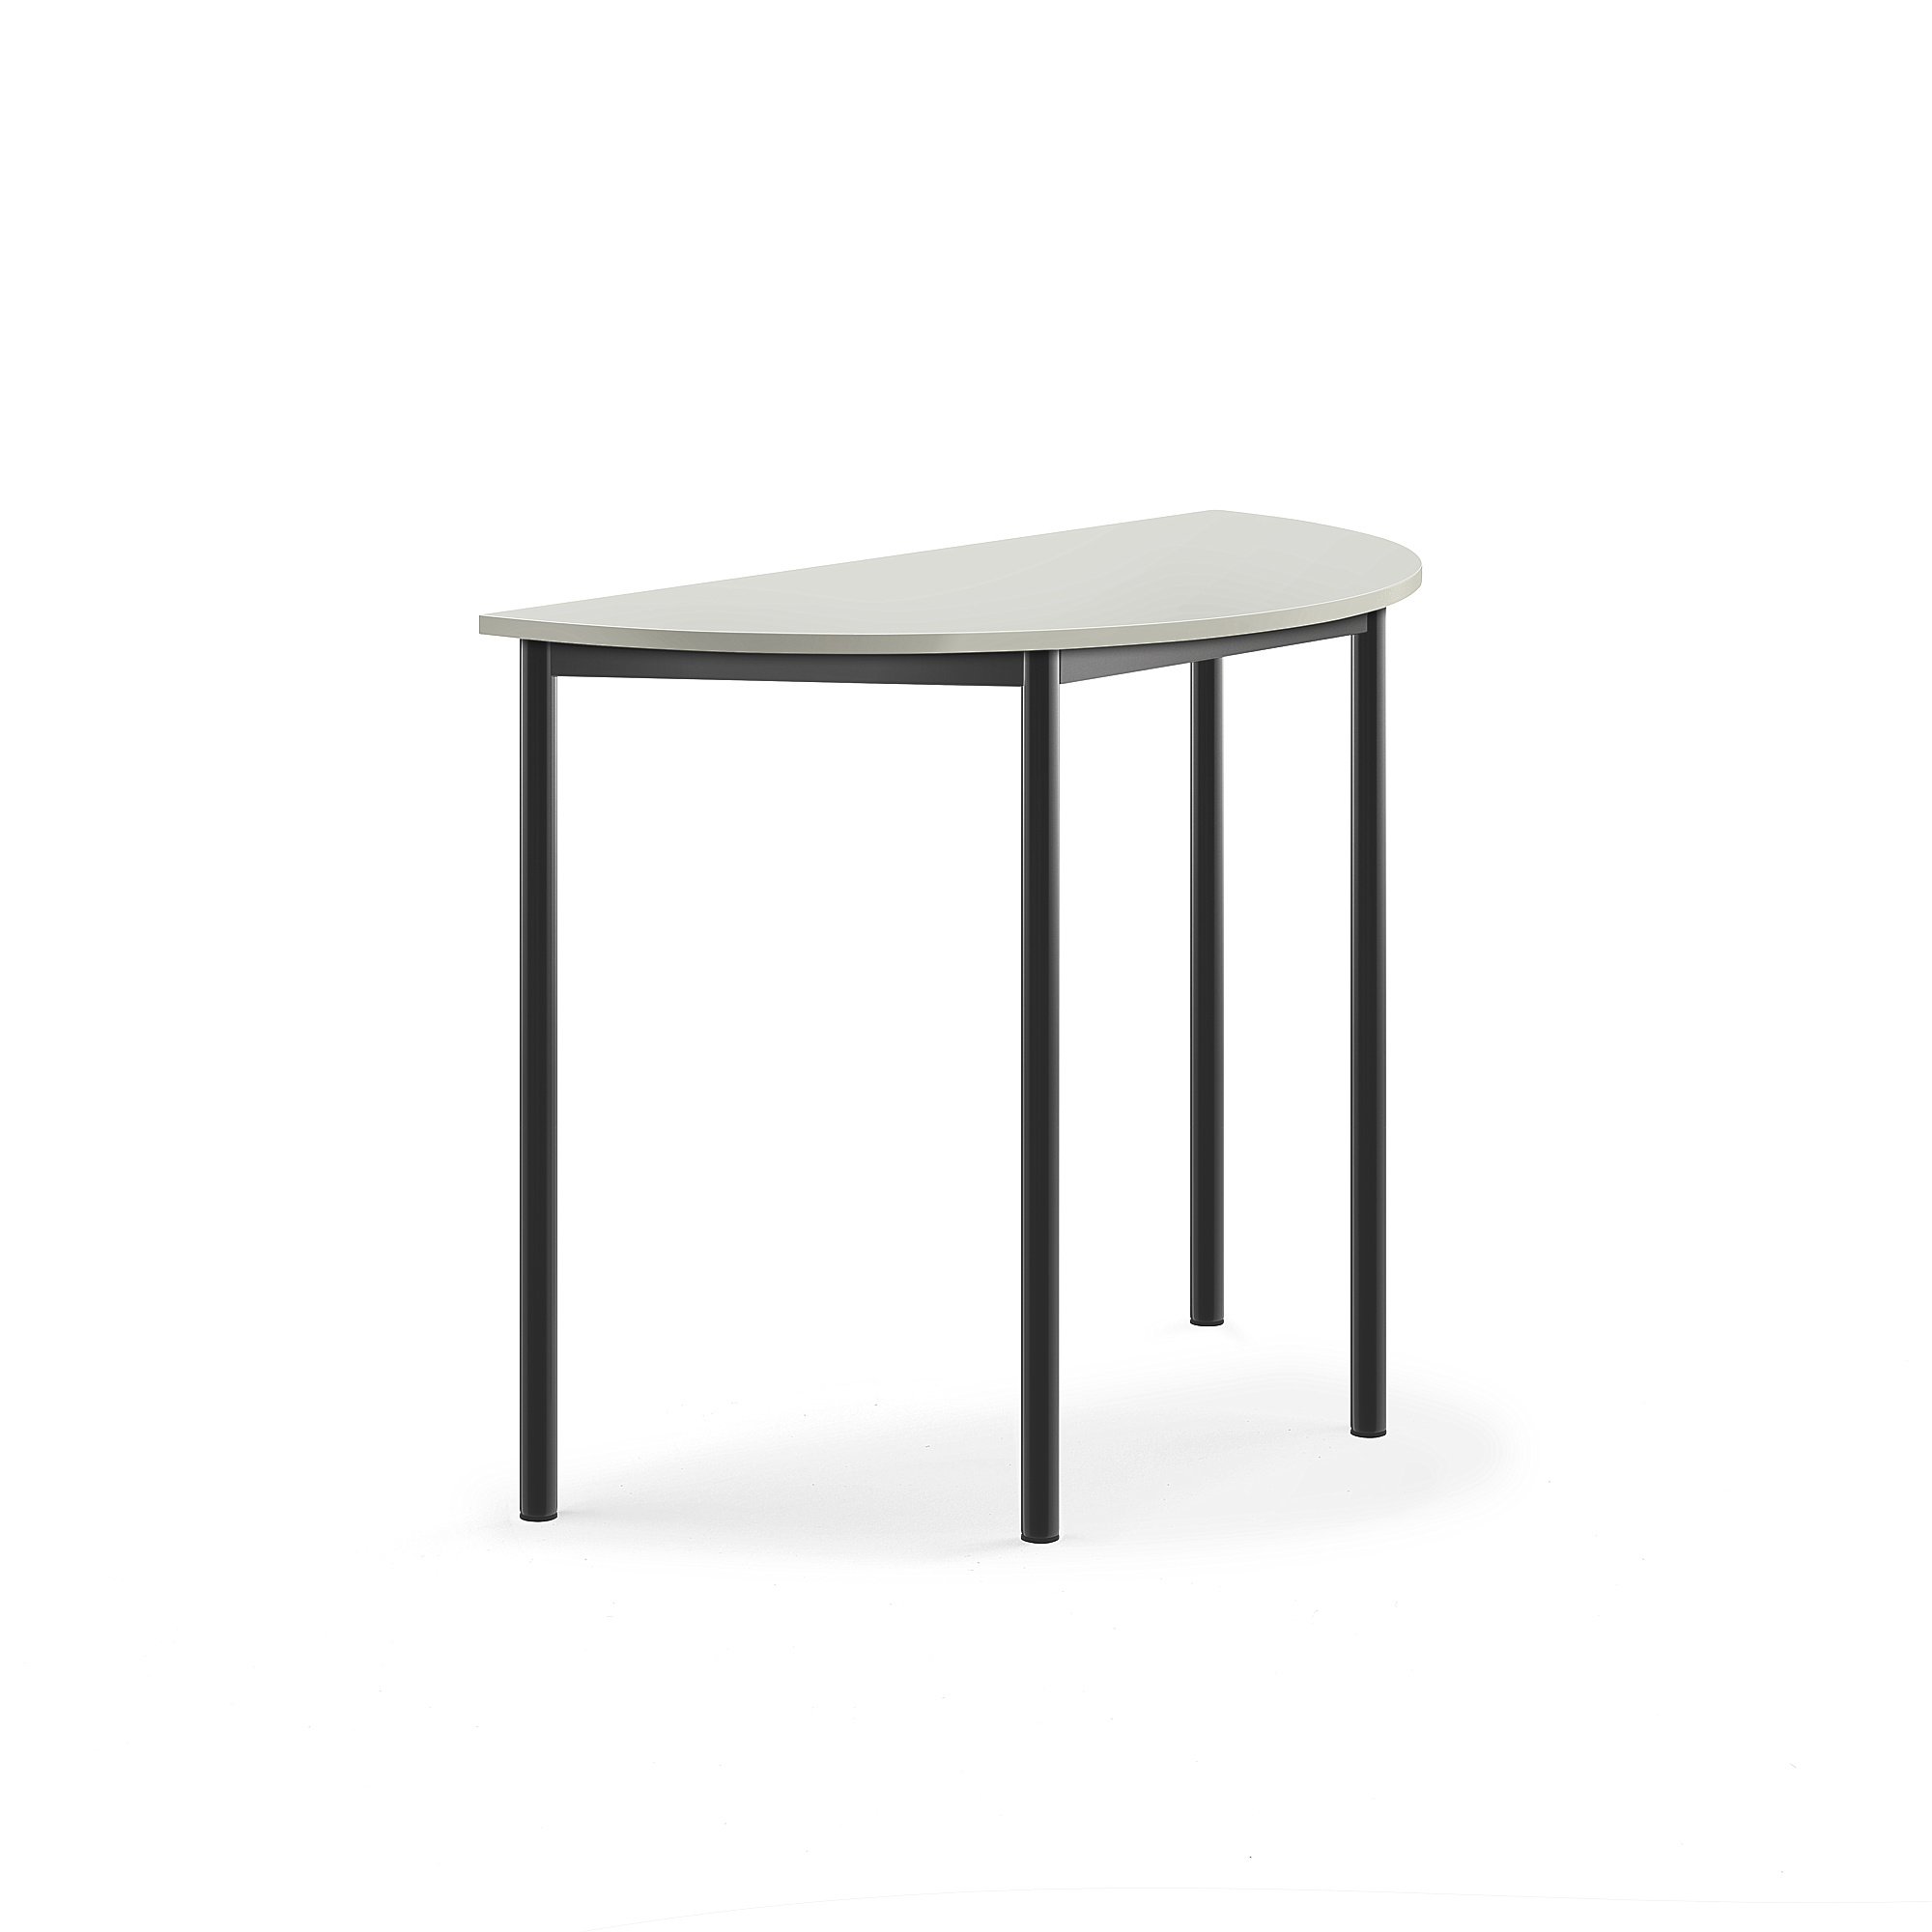 Stůl SONITUS, půlkruh, 1200x600x900 mm, antracitově šedé nohy, HPL deska tlumící hluk, šedá